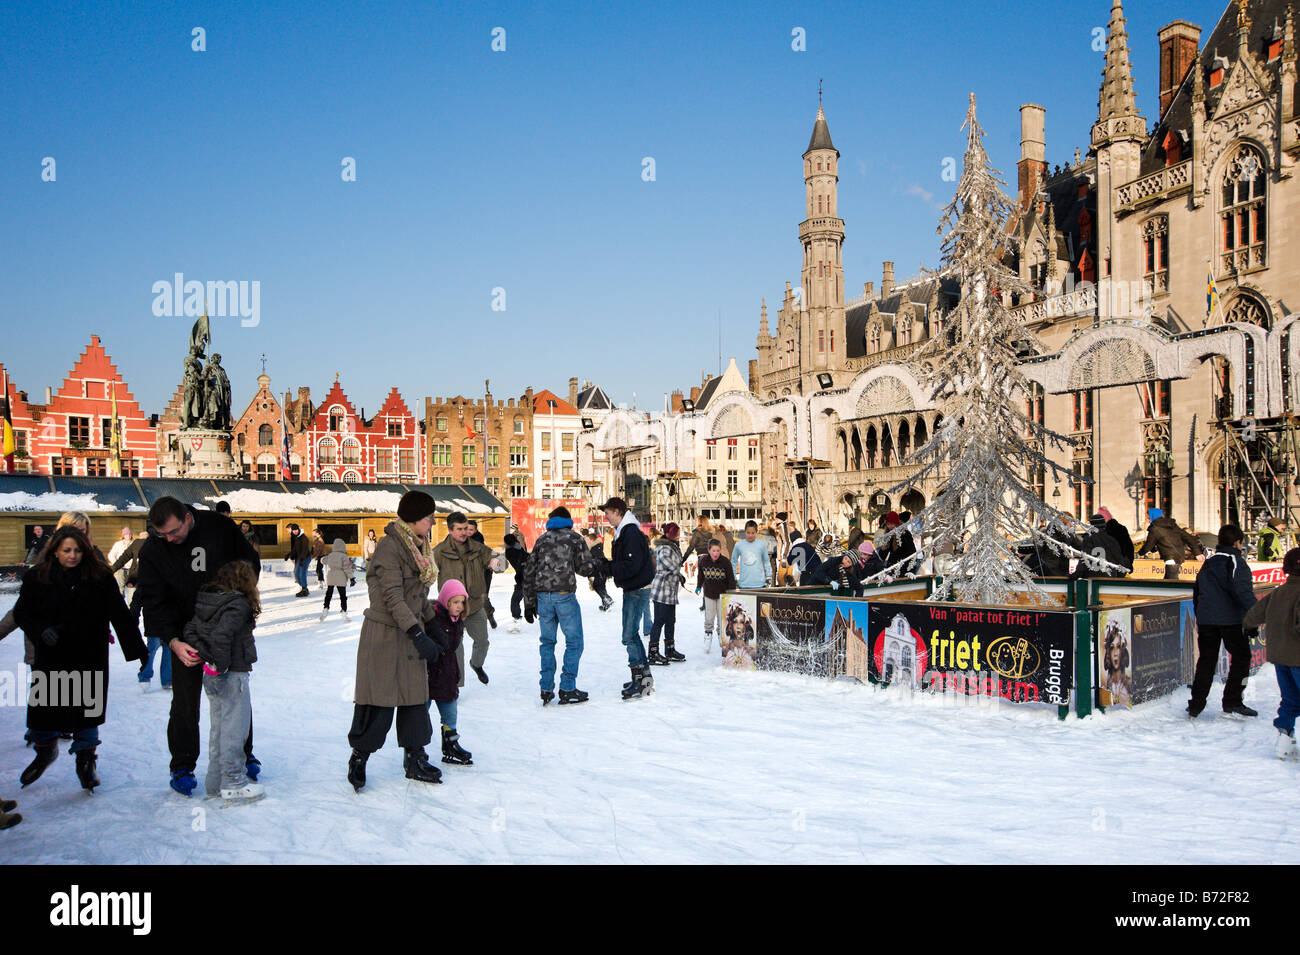 Patinoire au Marché de Noël de la Grand Place (place principale), Bruges, Belgique Banque D'Images